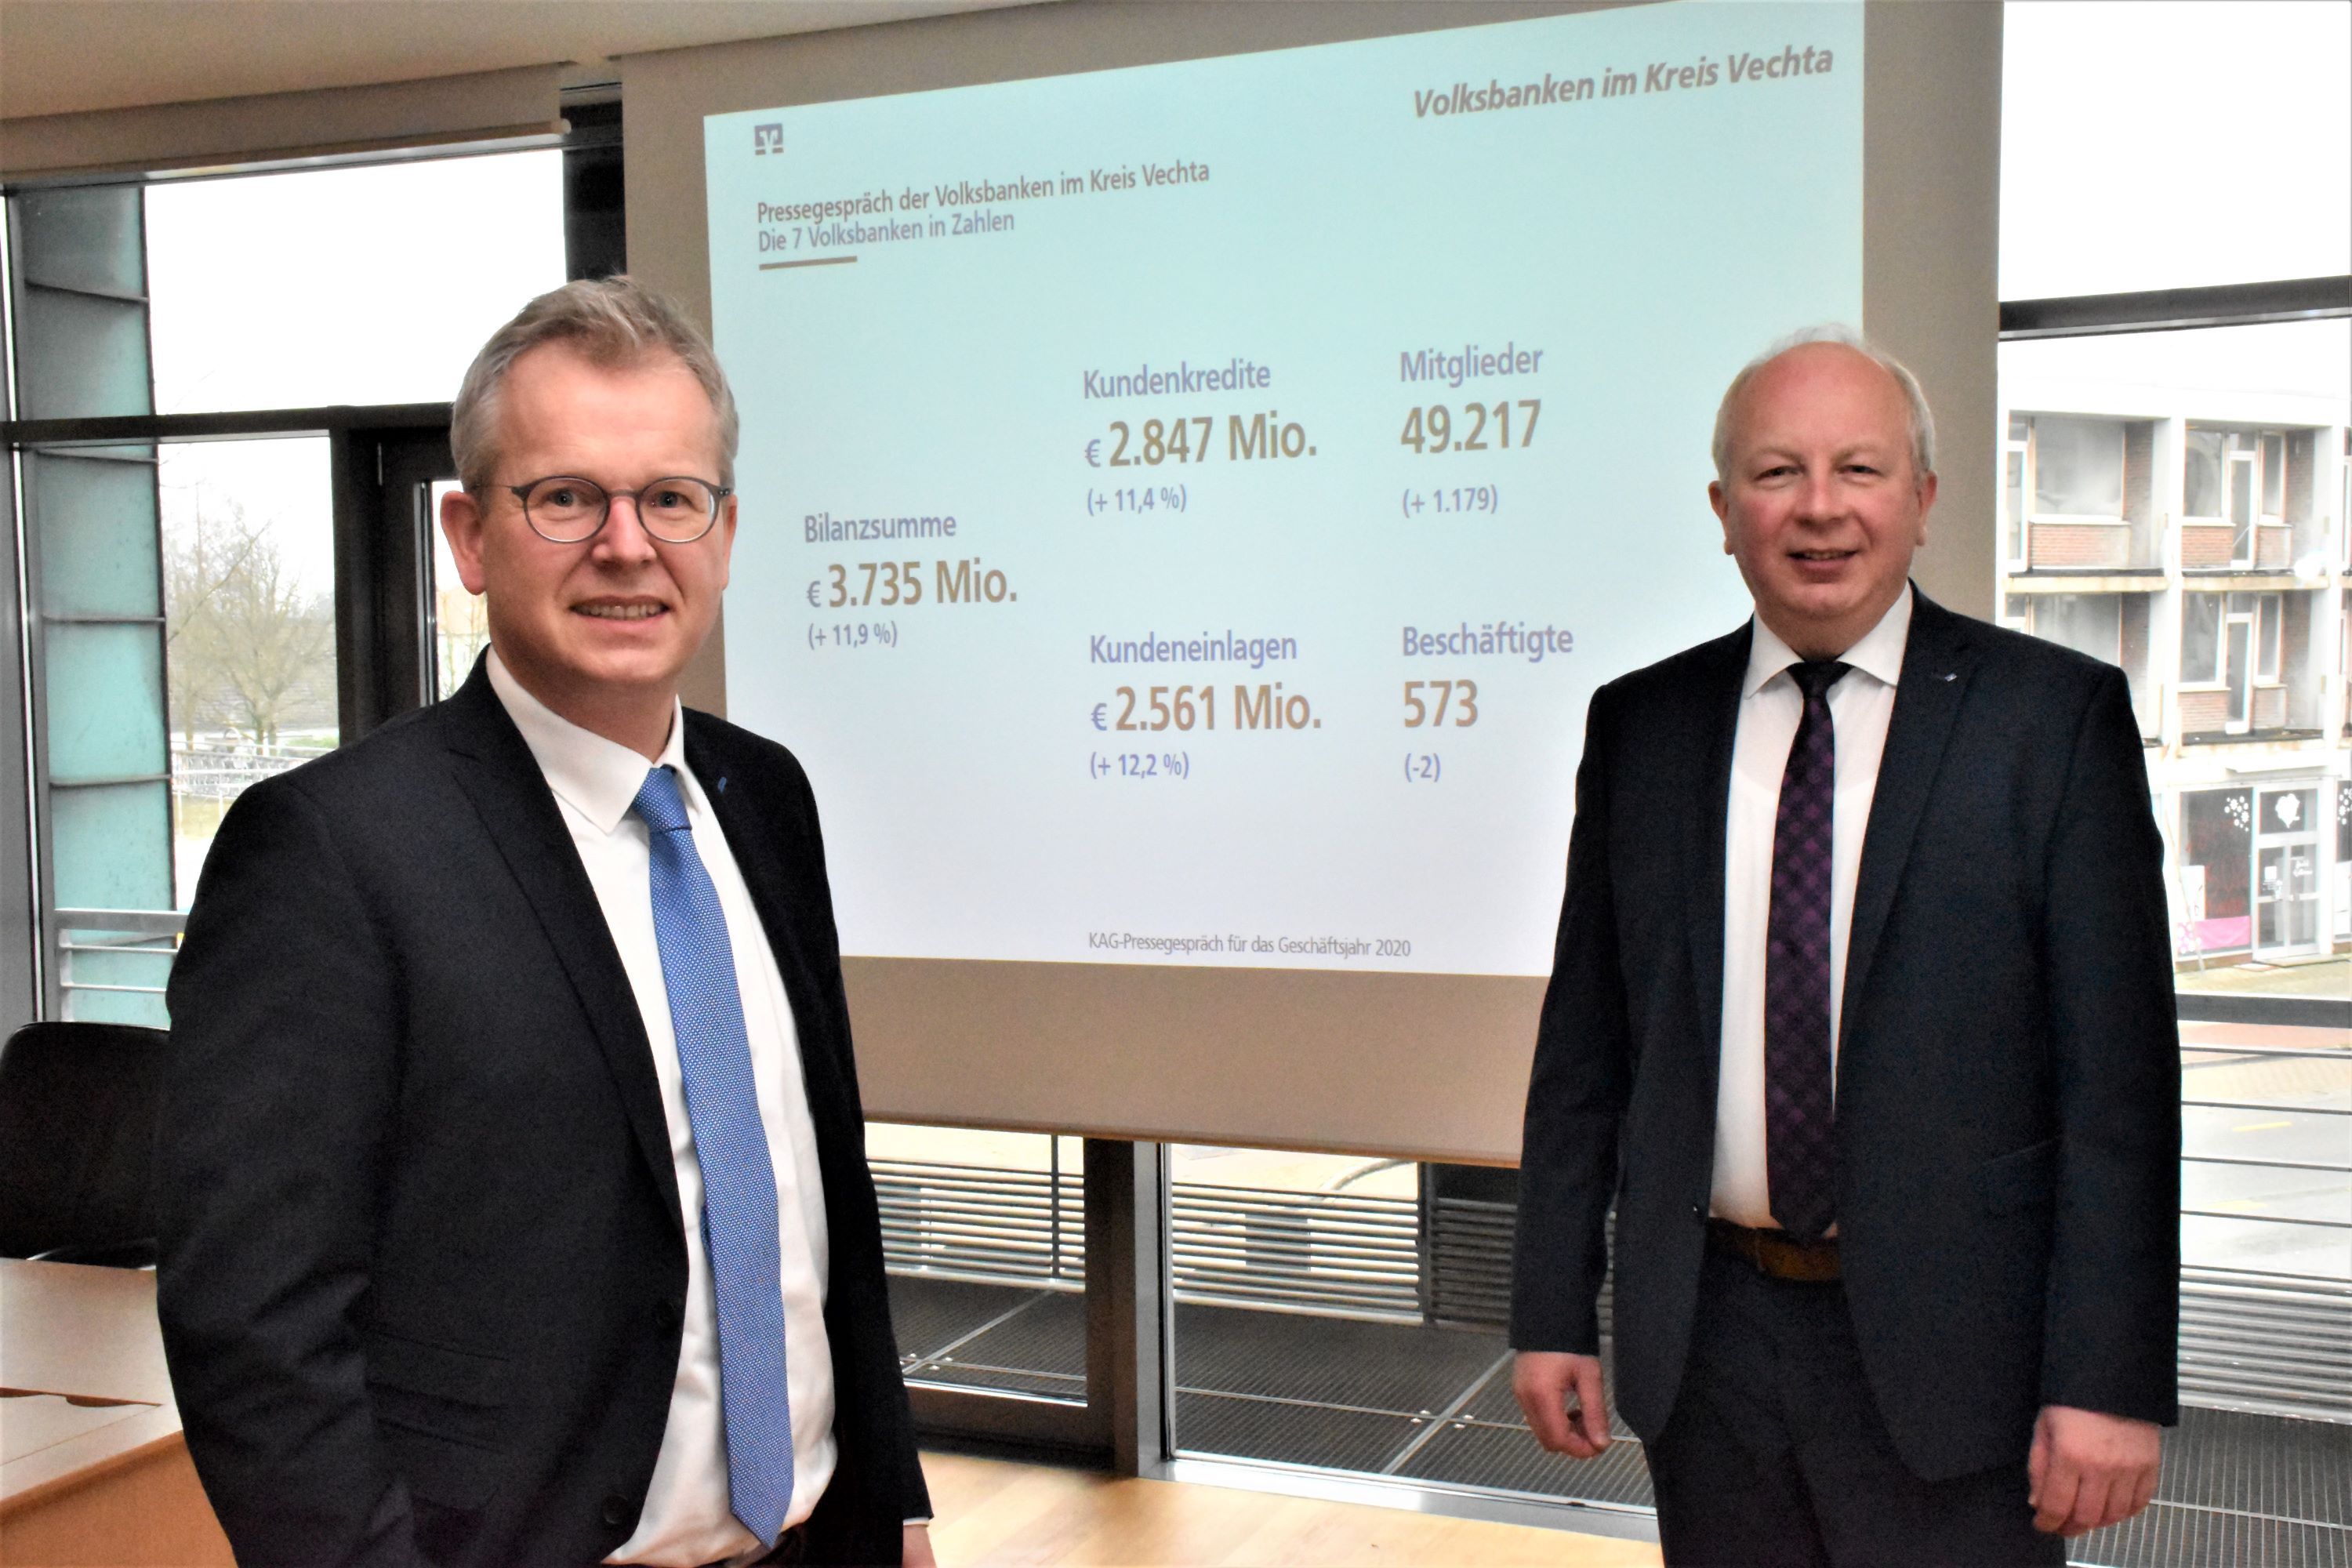 Die Volksbanken im Kreis machen noch gute Geschäfte wissen Dr. Martin Kühling (links, Volksbank Vechta) und Thomas gr. Klönne (Volksbank Dammer Berge). Foto: Kühn